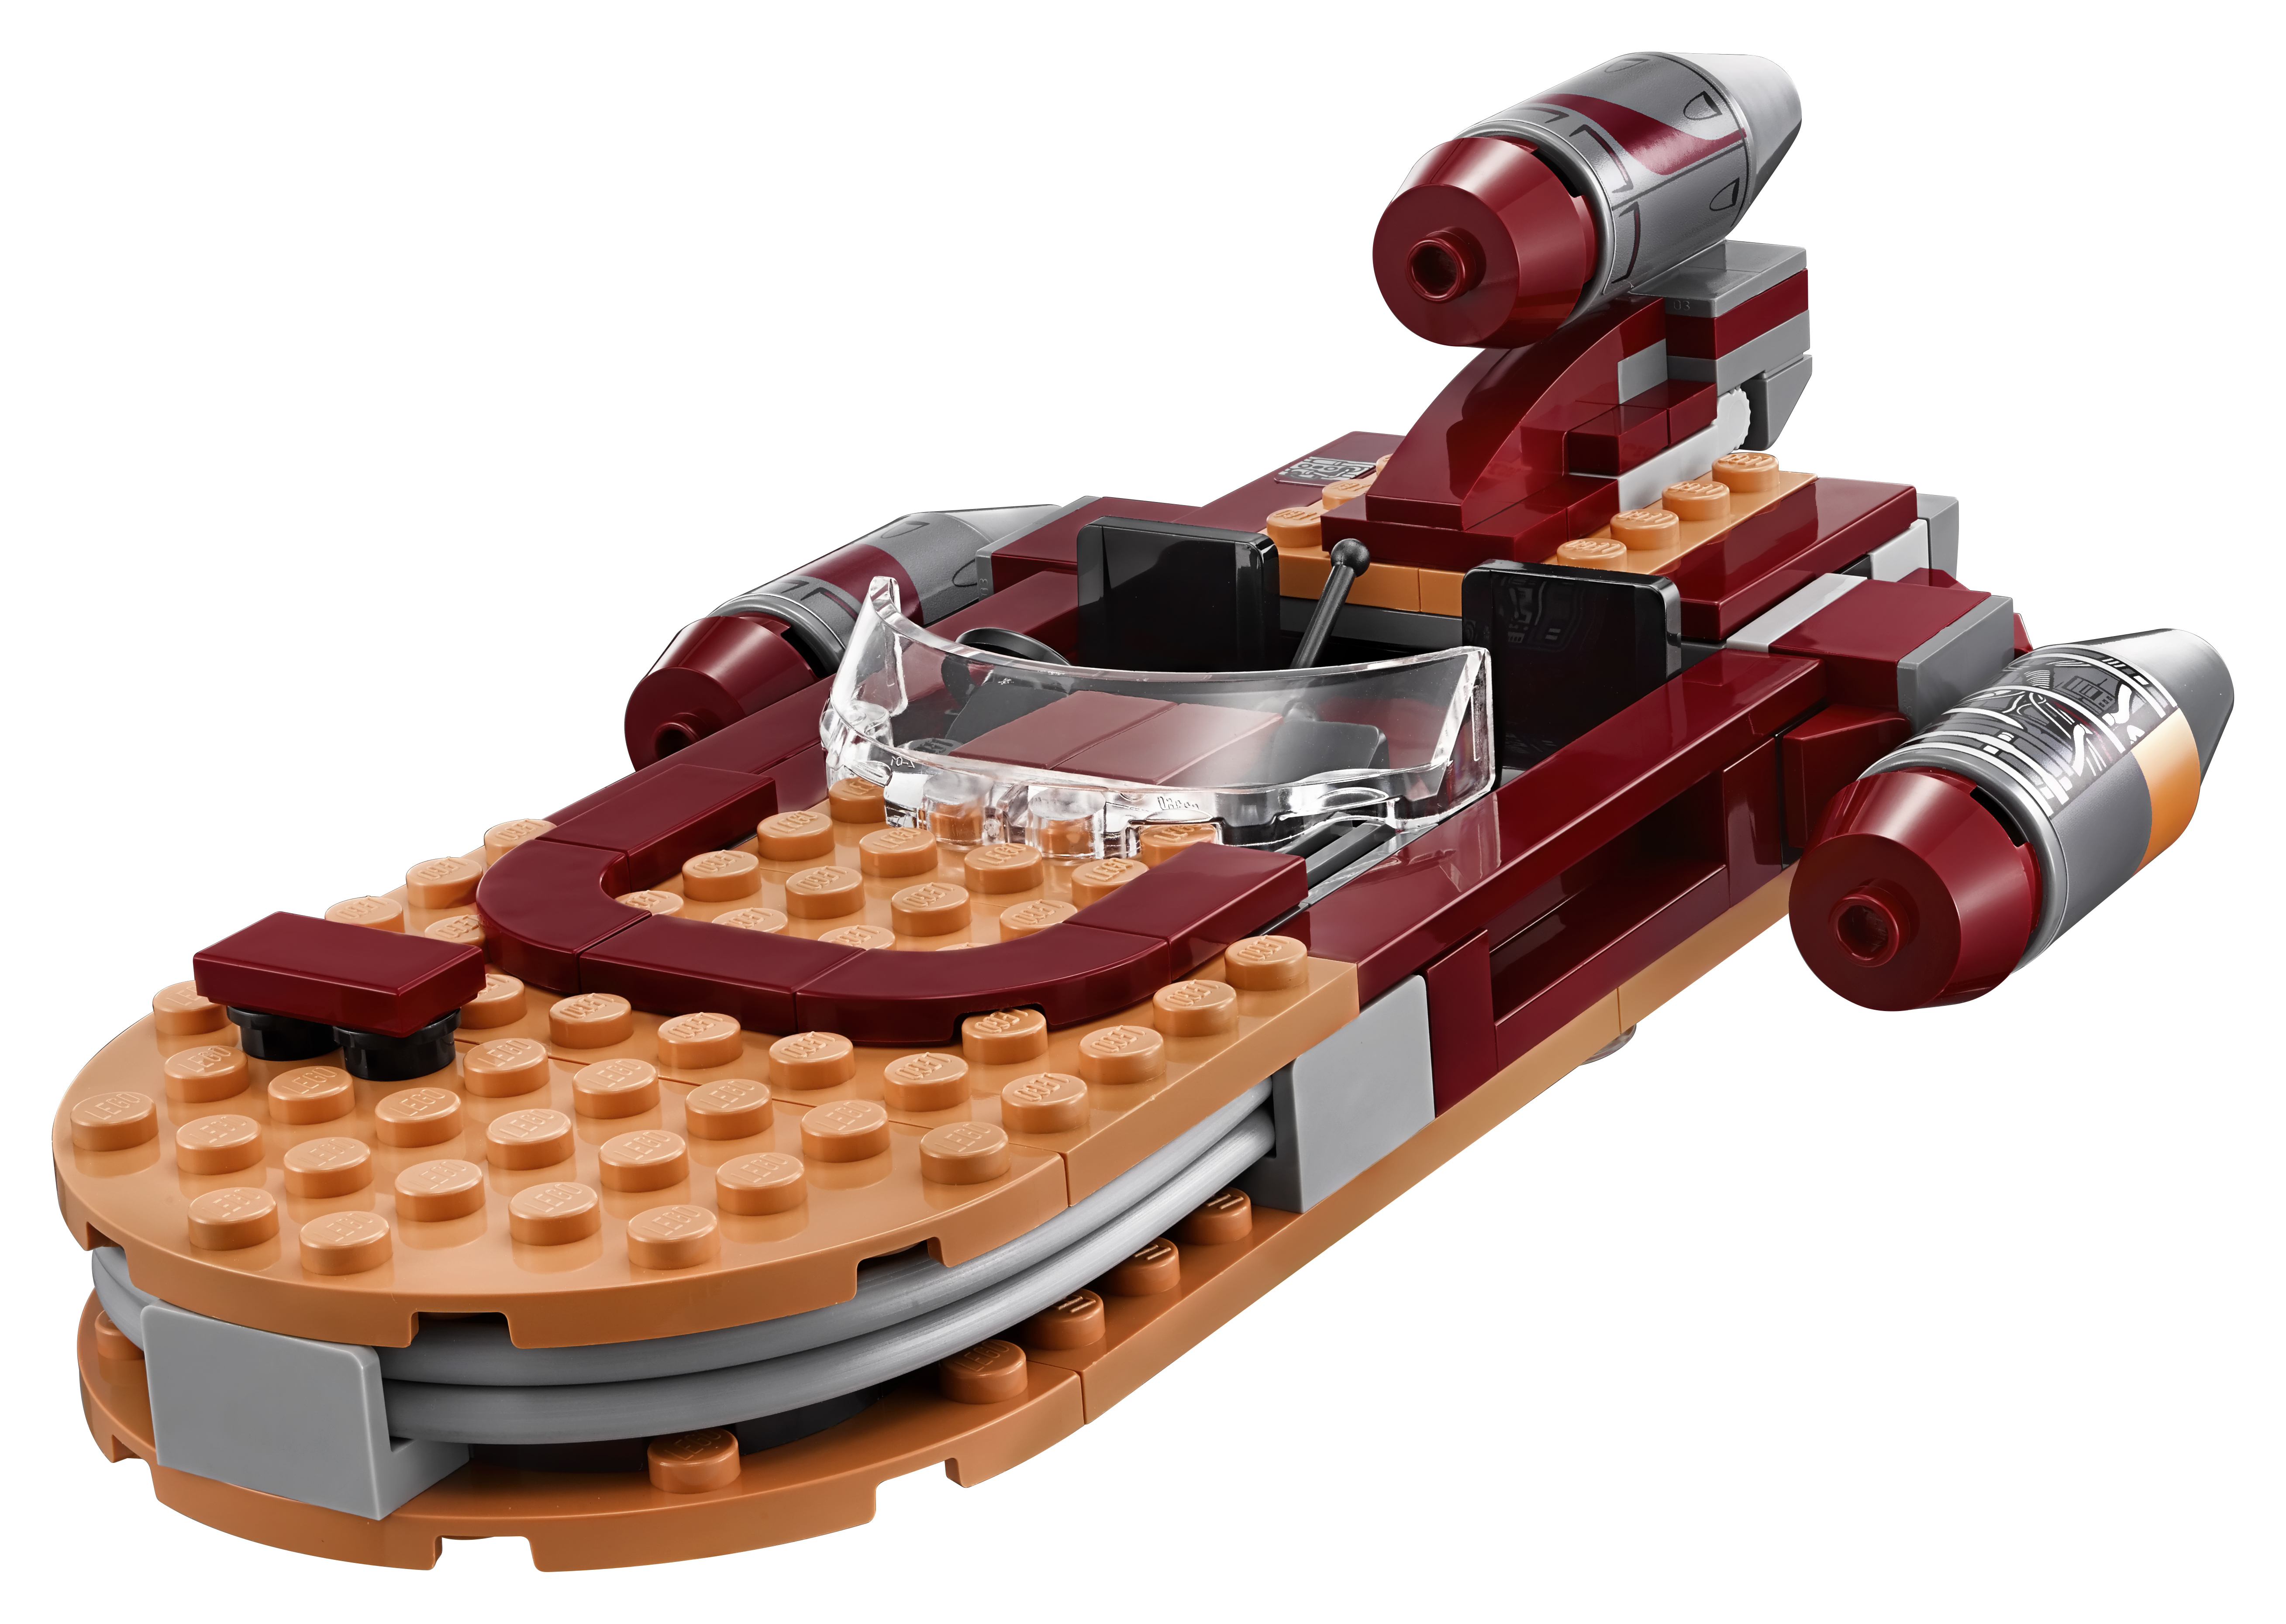 LEGO Star Wars TM Luke's Landspeeder? 75173 - image 3 of 10